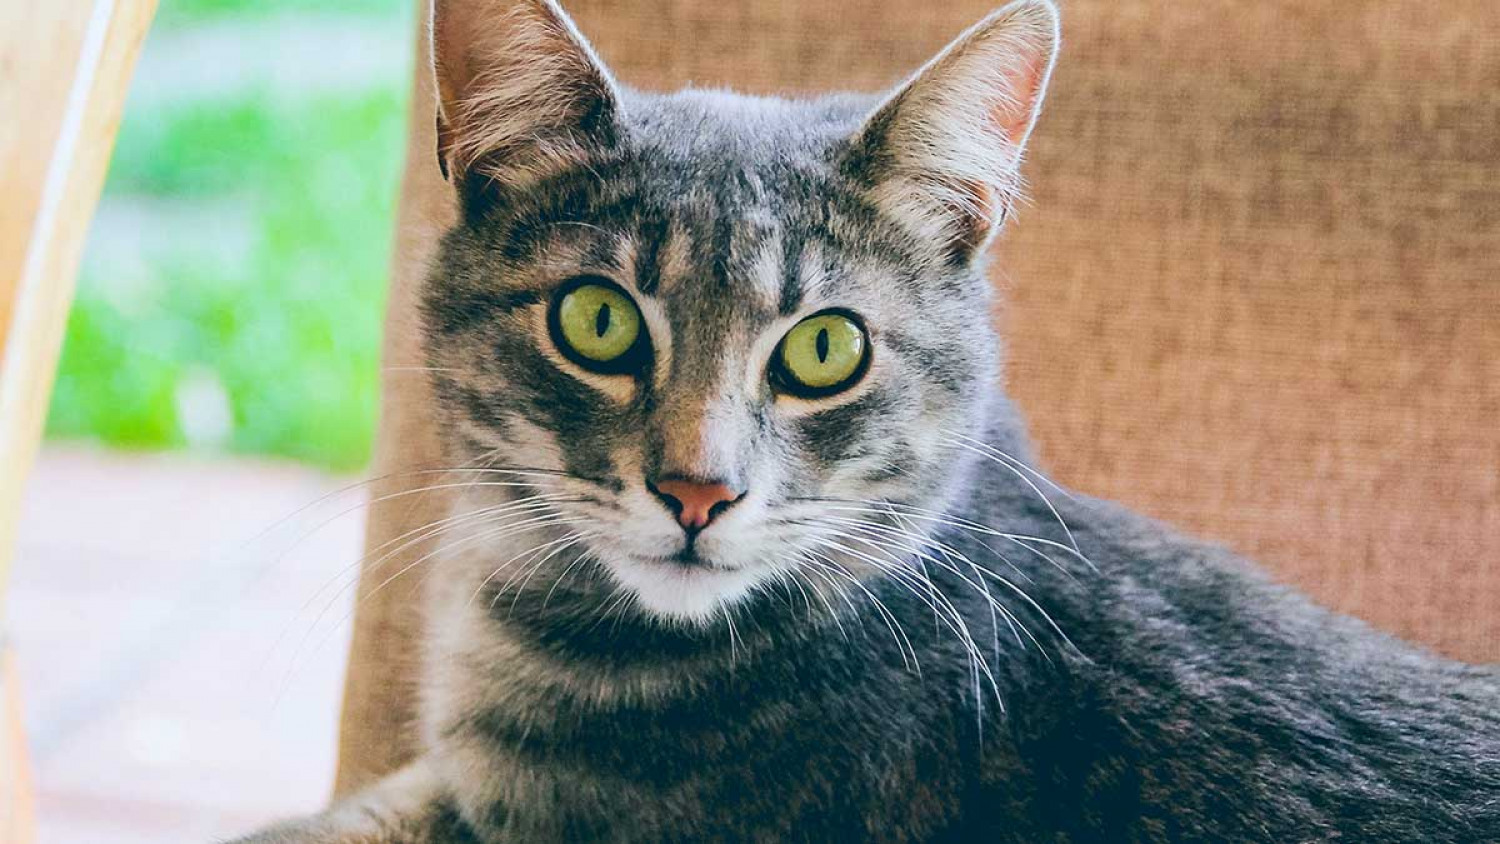 Νέα επιστημονική έρευνα: Οι γάτες μπορούν εύκολα να μολυνθούν από τον κορωνοϊό και να τον μεταδώσουν σε άλλες γάτες